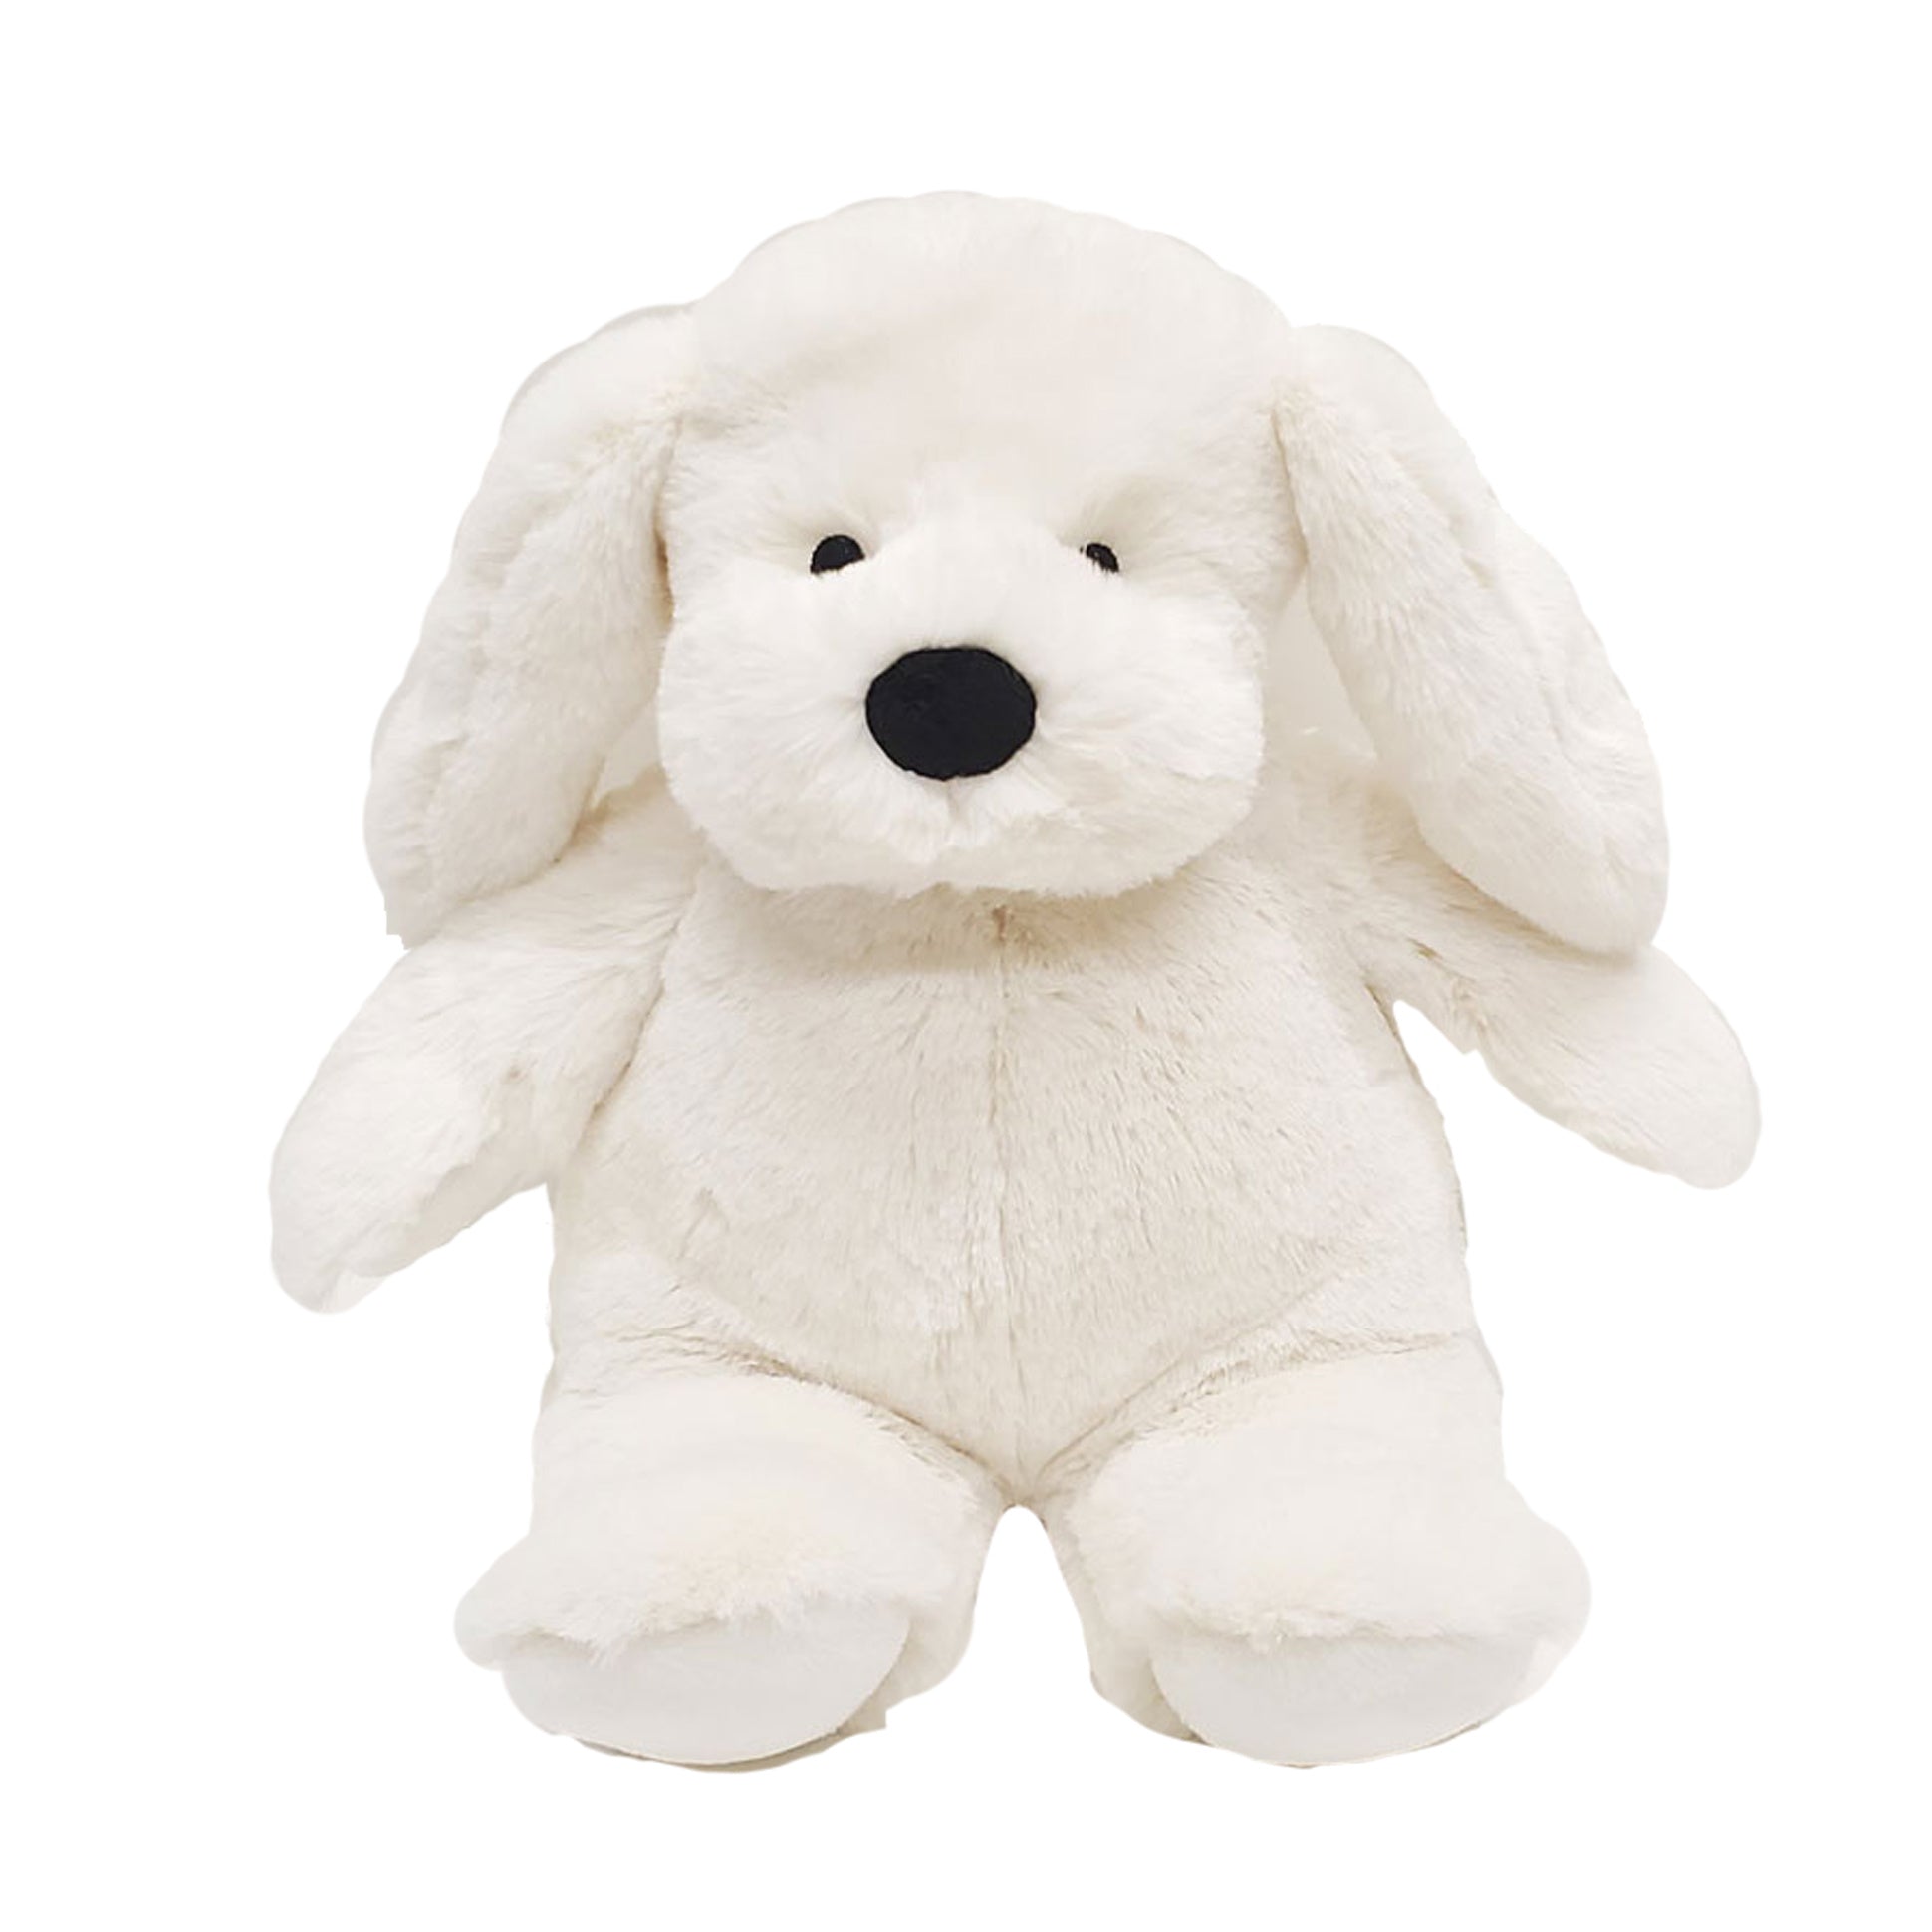 Cuddle Buddy Puppy - White - Heated Stuffed Animal